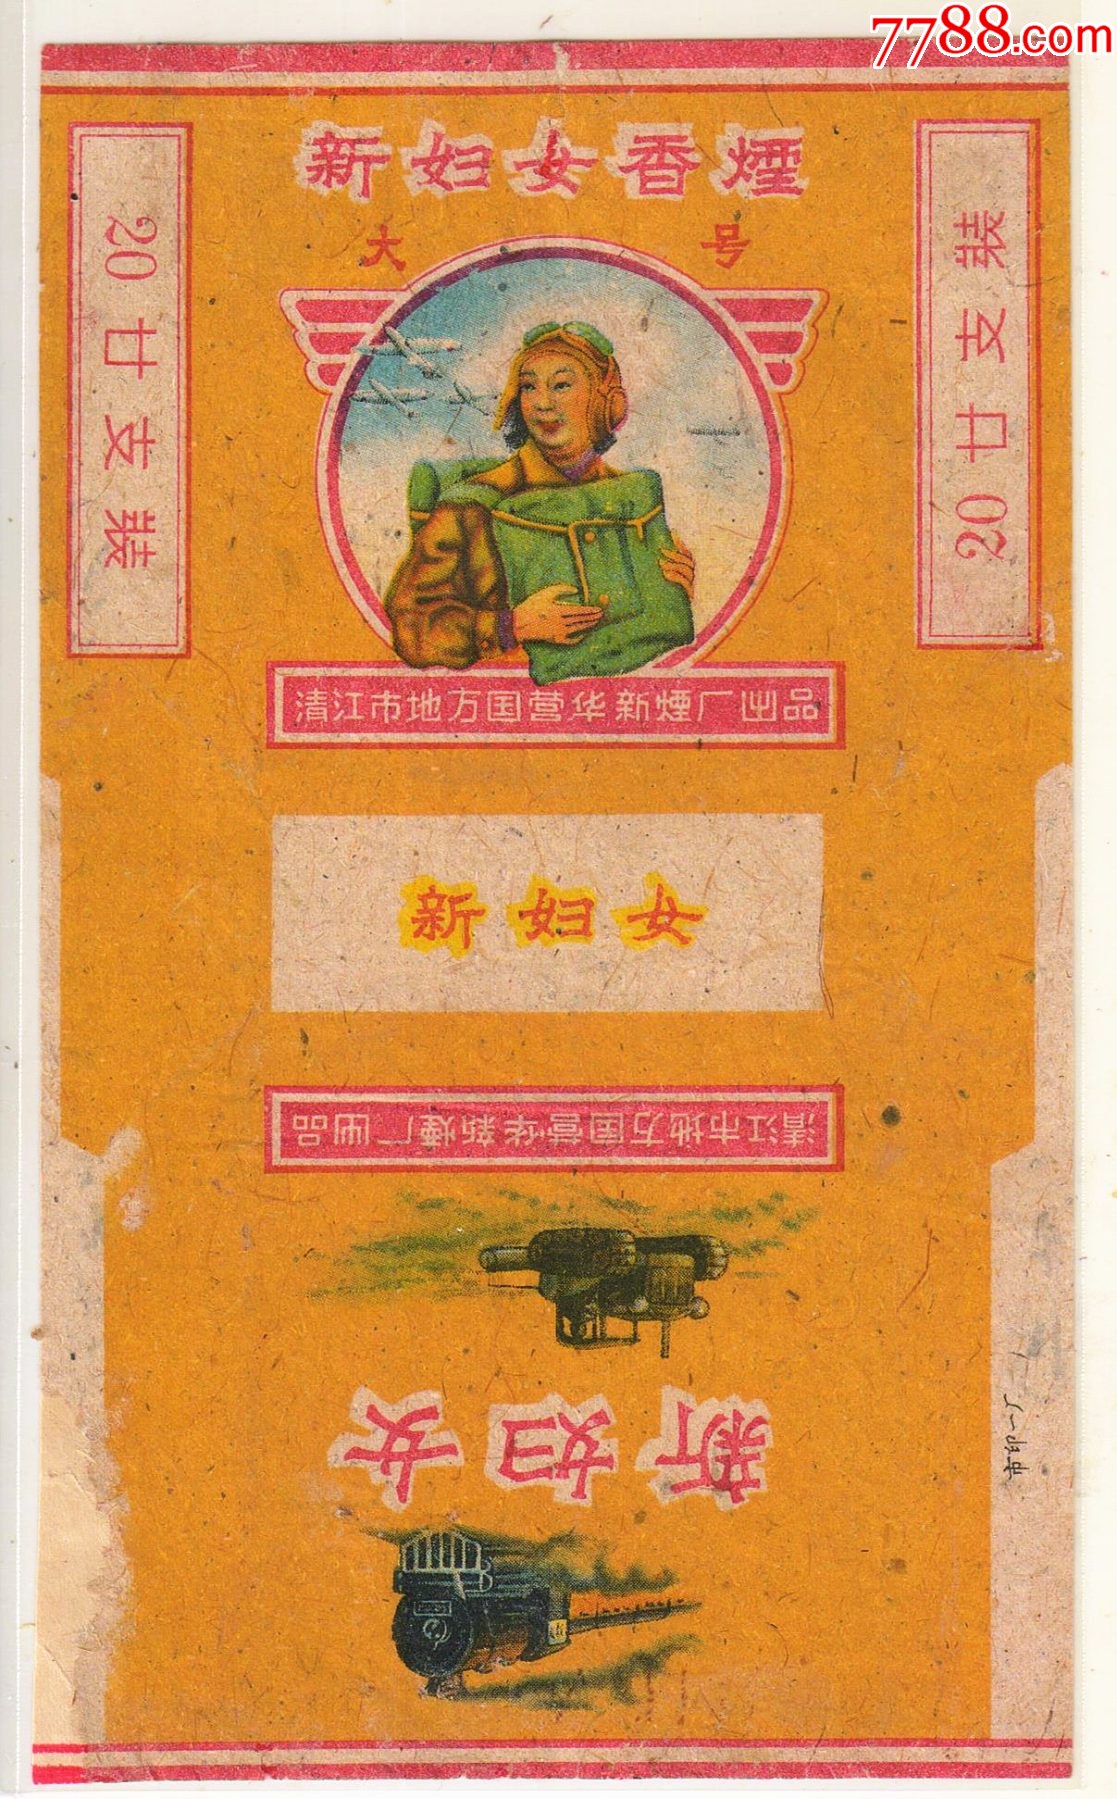 北京香烟罐装50支图片